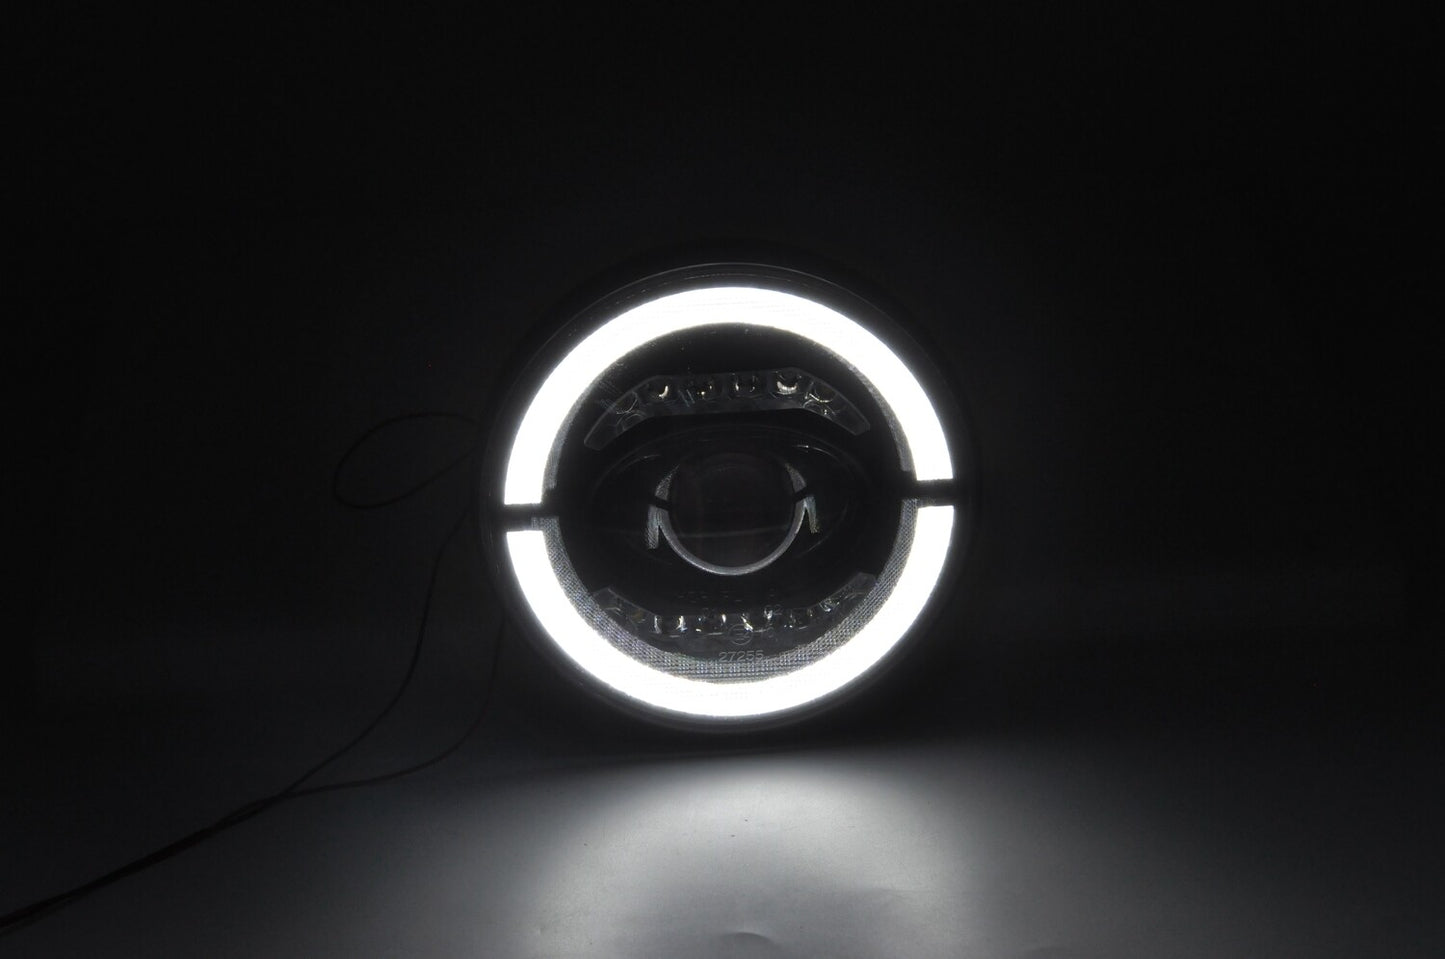 LED 7" Headlamp Upgrade